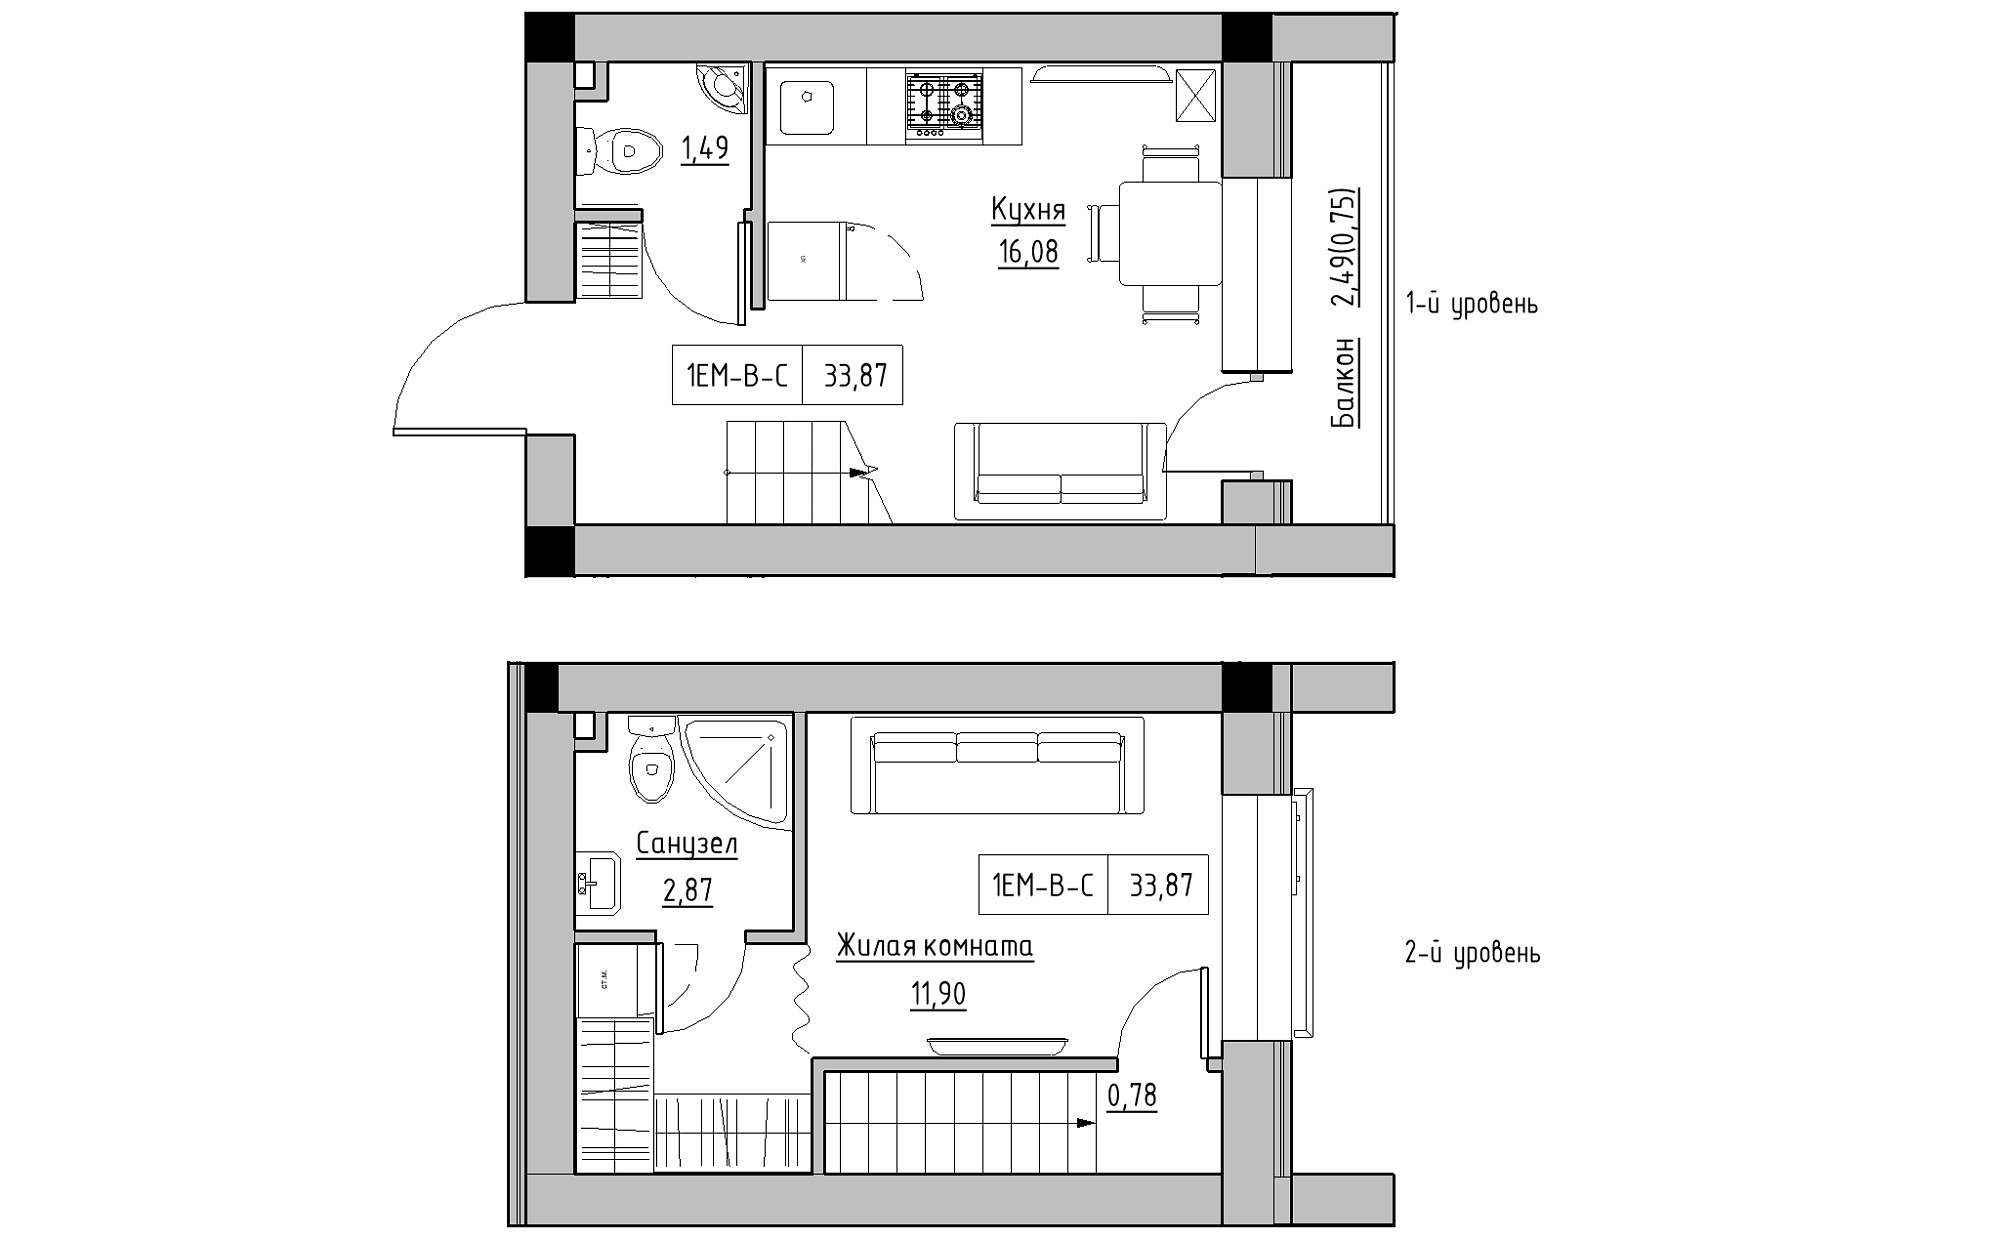 Planning 2-lvl flats area 33.87m2, KS-022-05/0012.